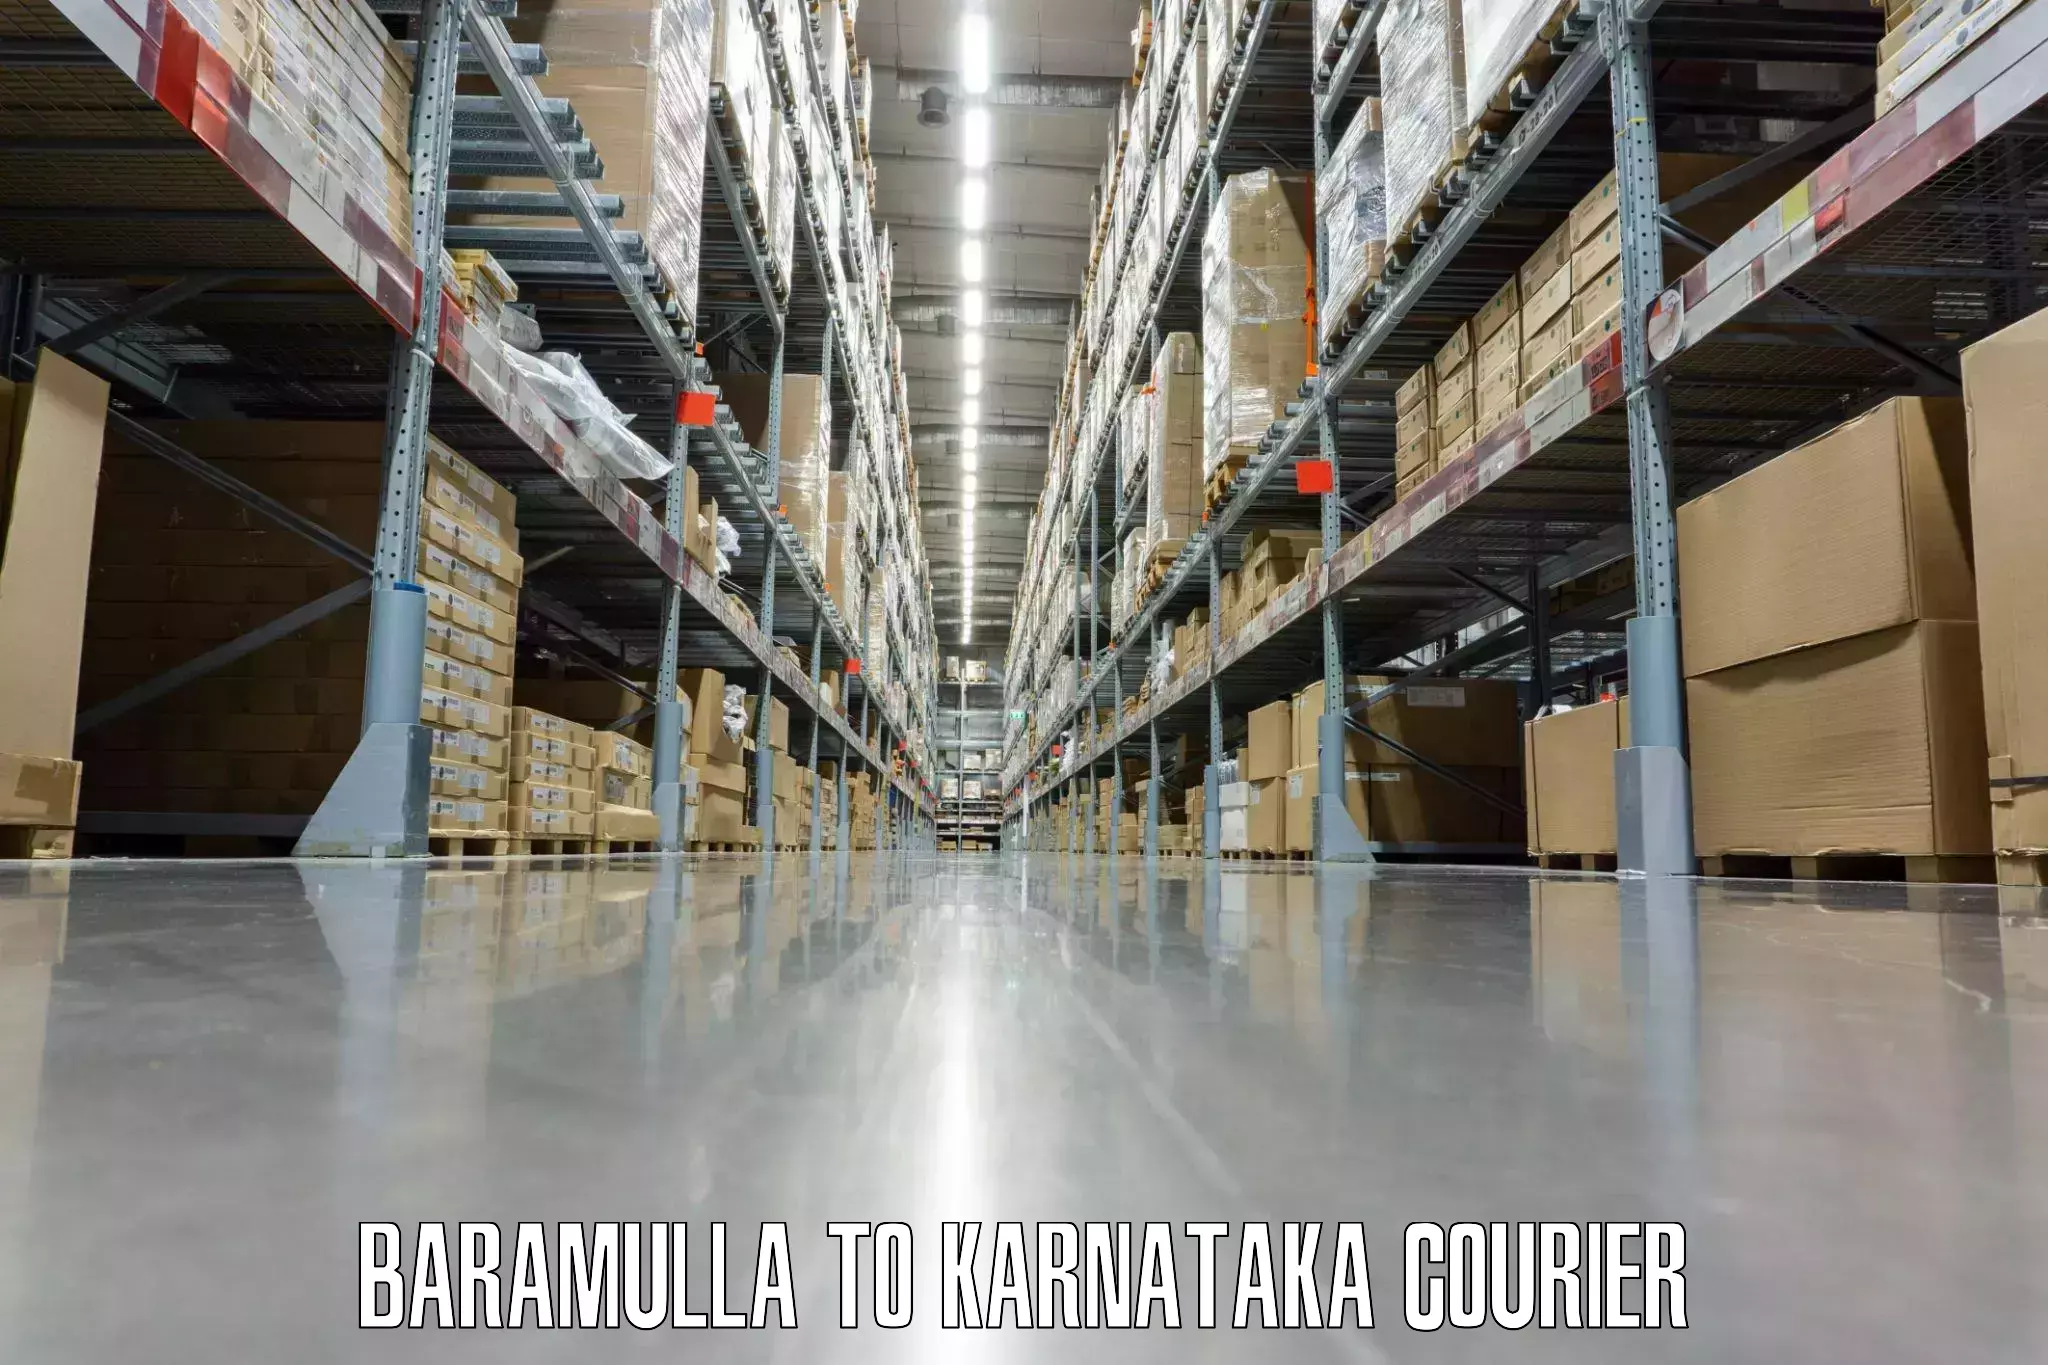 Luggage shipment tracking Baramulla to Chikkaballapur